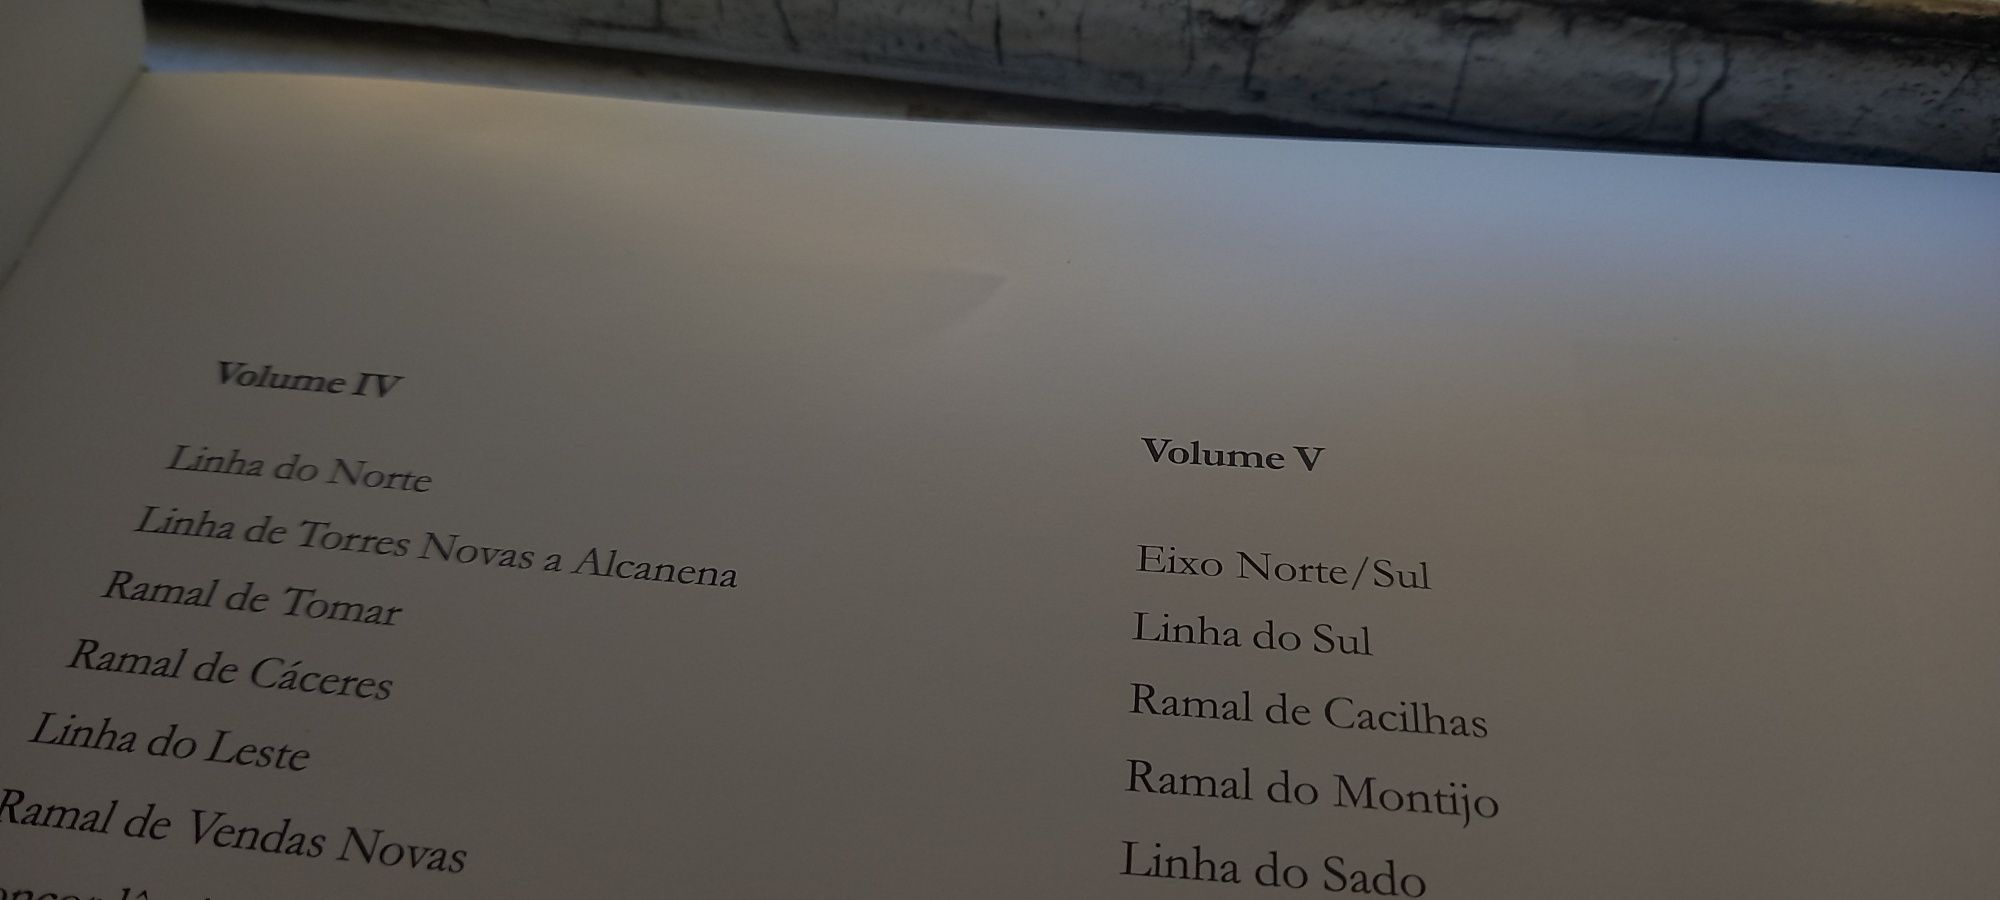 Livro "Comboios em Portugal -Volume 2" CP